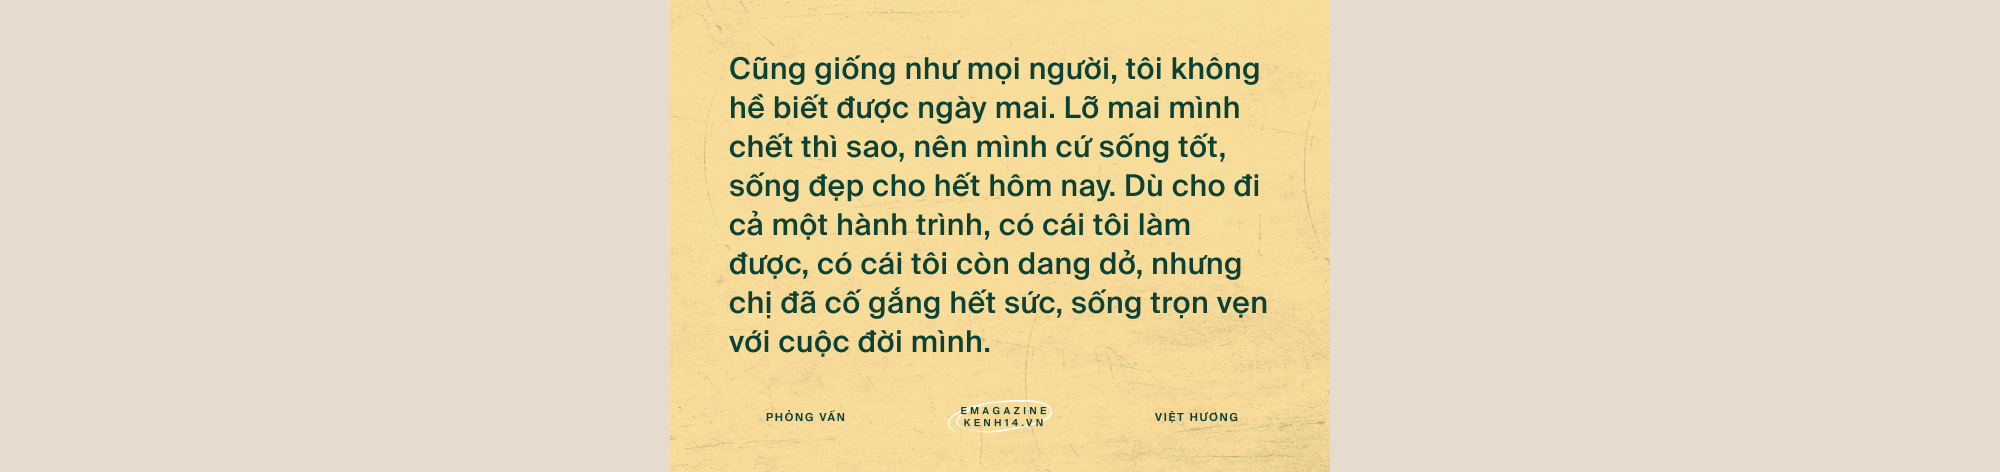 Việt Hương: Đã có nhiều người gọi điện nắm tay tôi nói sẽ cố sống, nhưng qua hôm sau tôi phải đưa áo quan tới-22